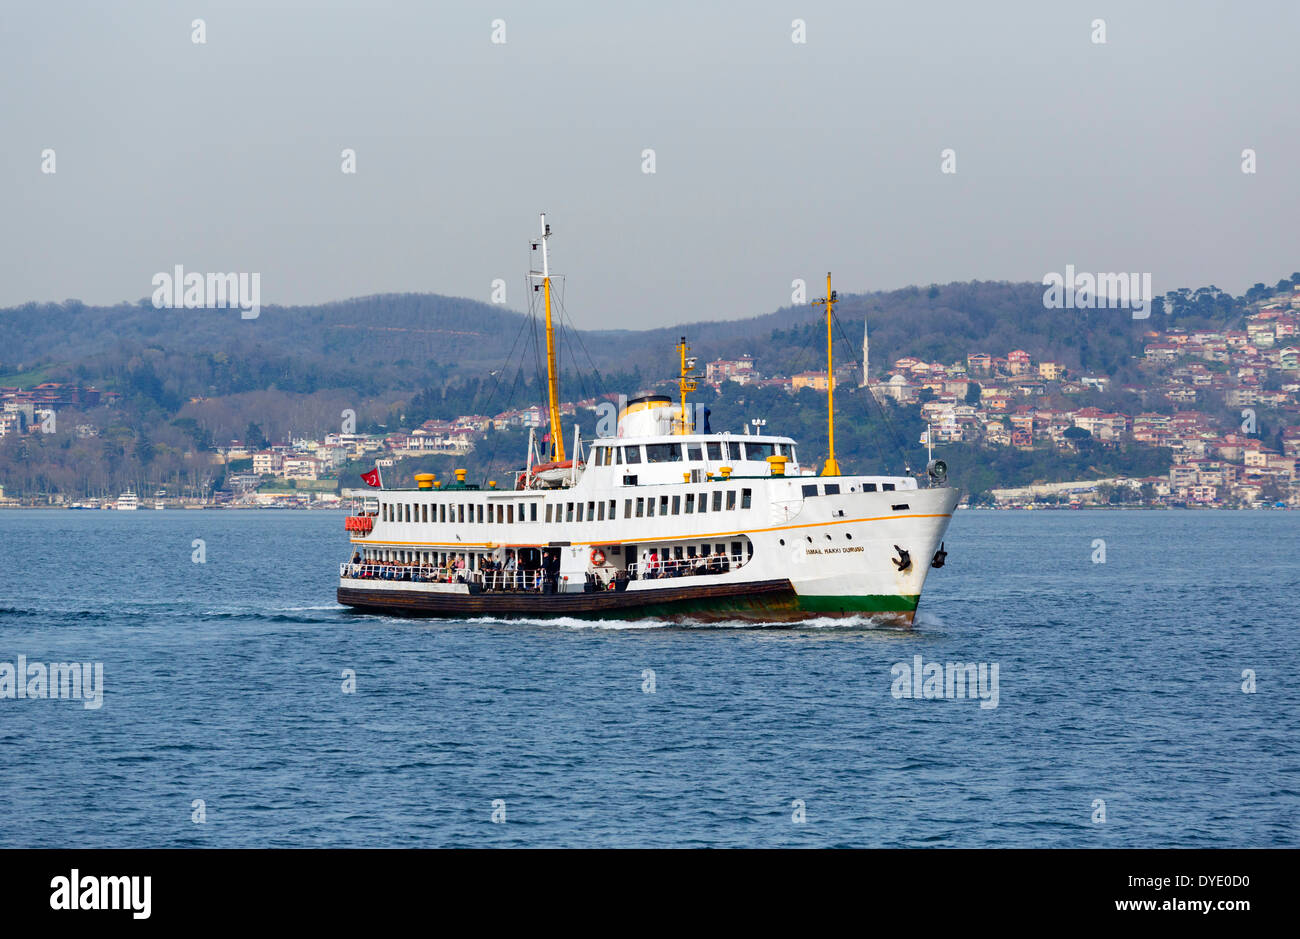 Cruise boat/ferry on the Bosphorus, Istanbul, Turkey Stock Photo